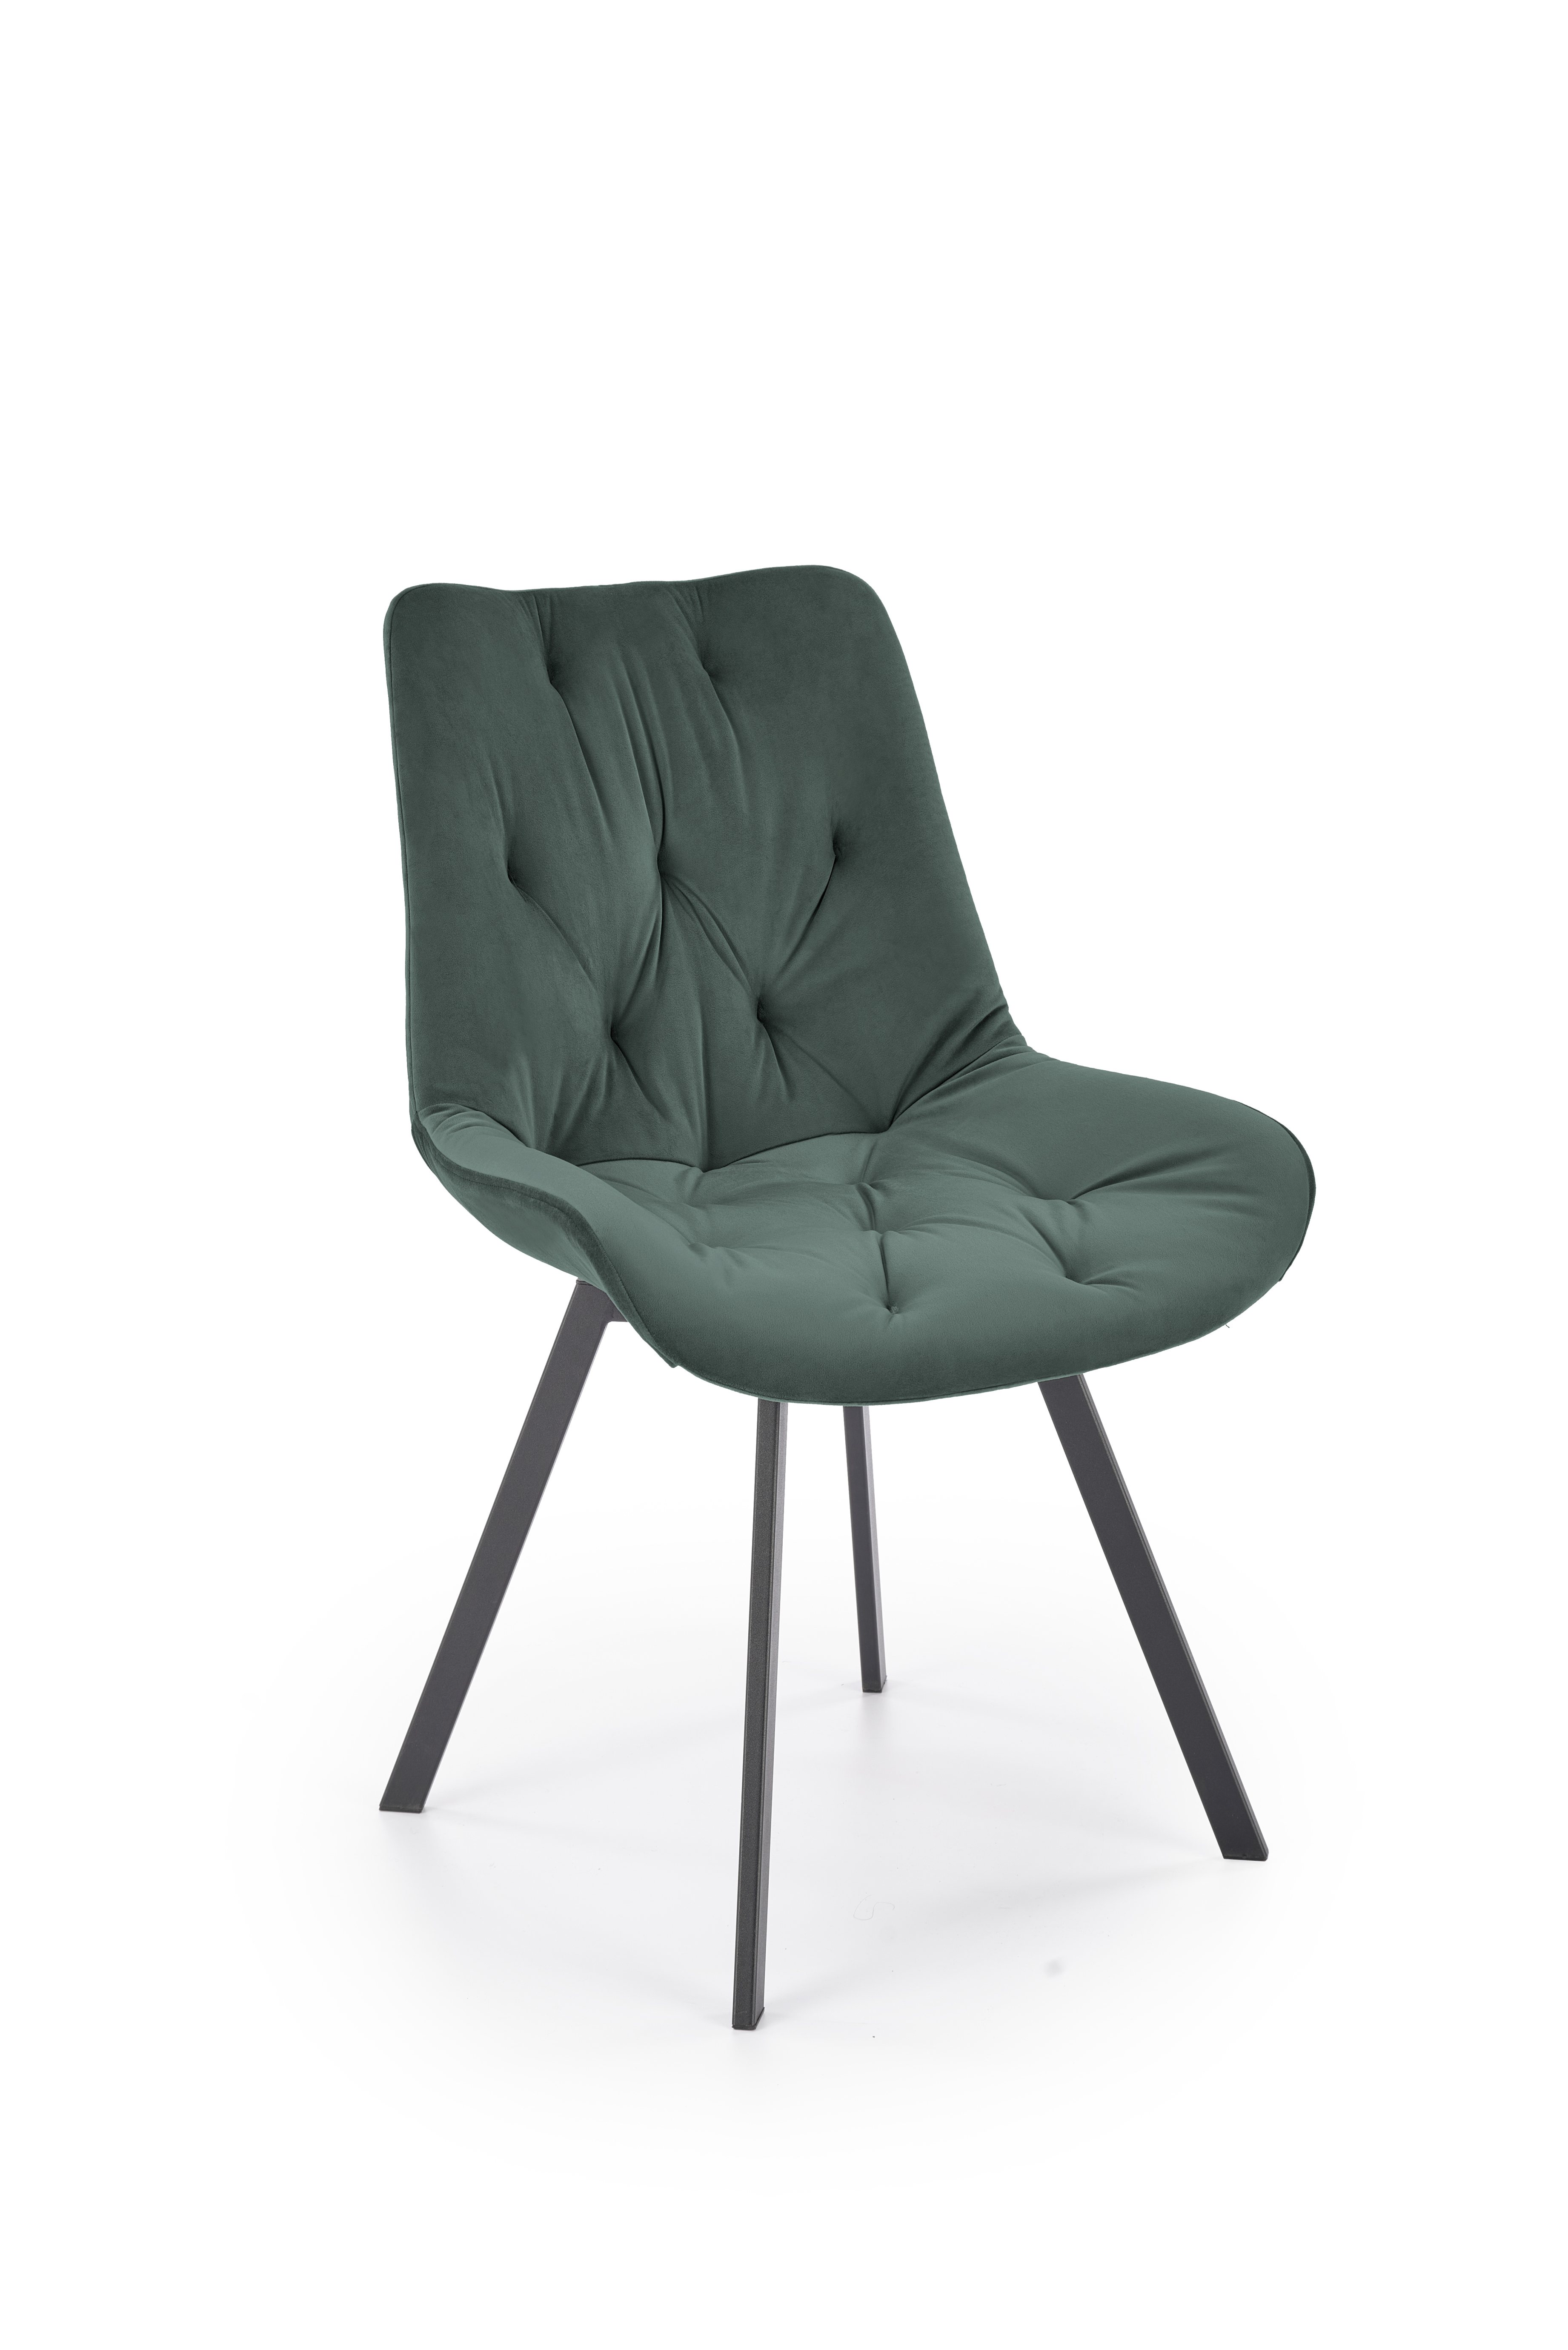 Krzesło tapicerowane K519 - ciemny zielony k519 krzesło ciemny zielony